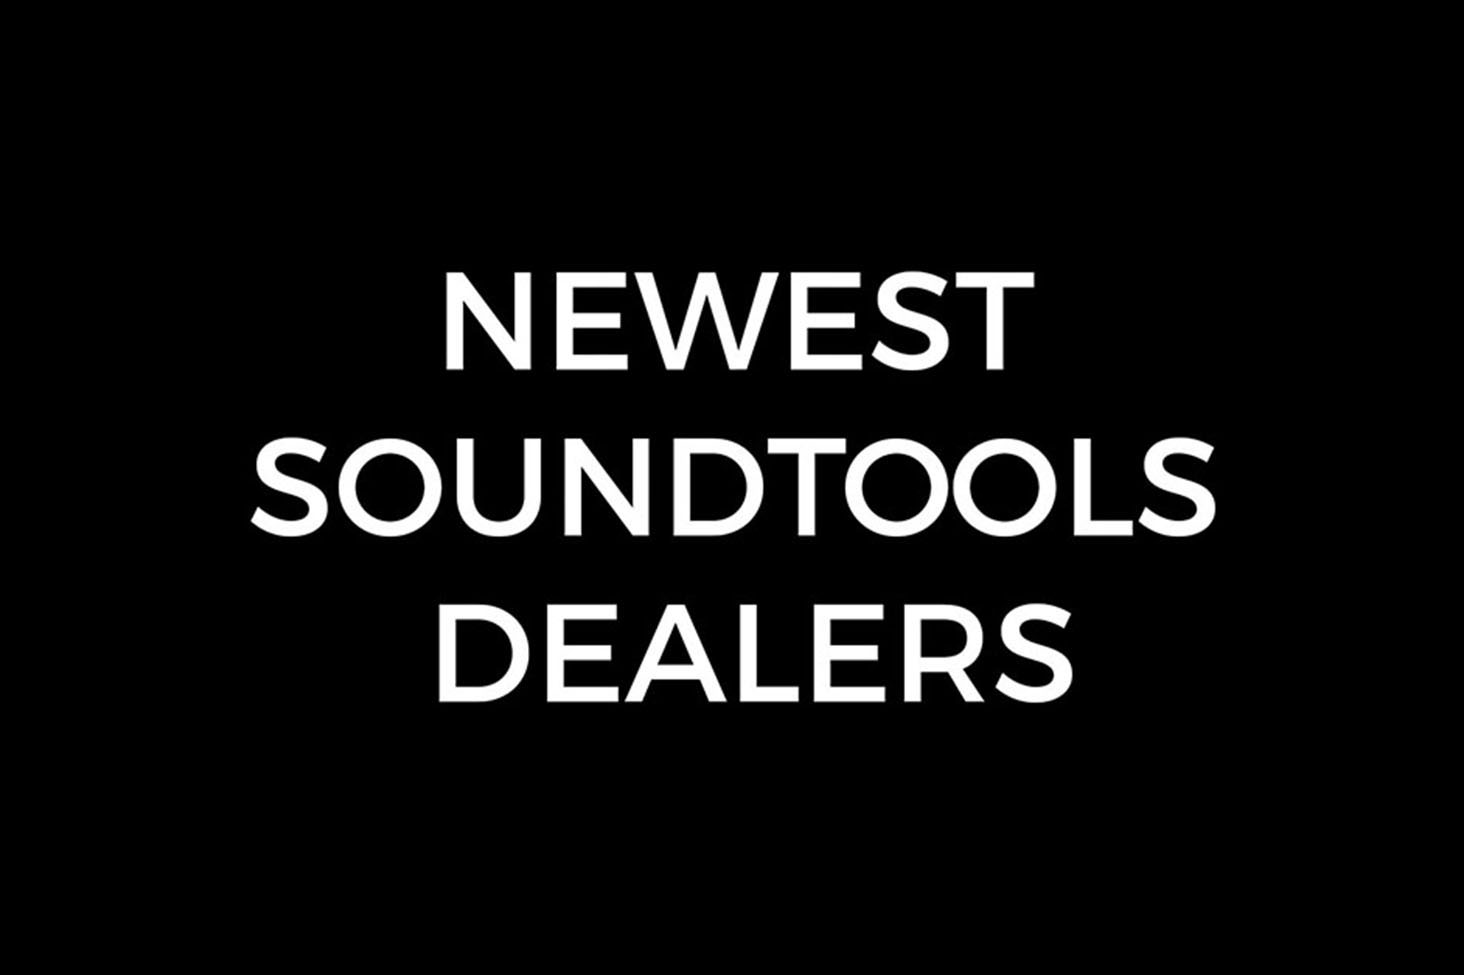 SoundTools New dealers